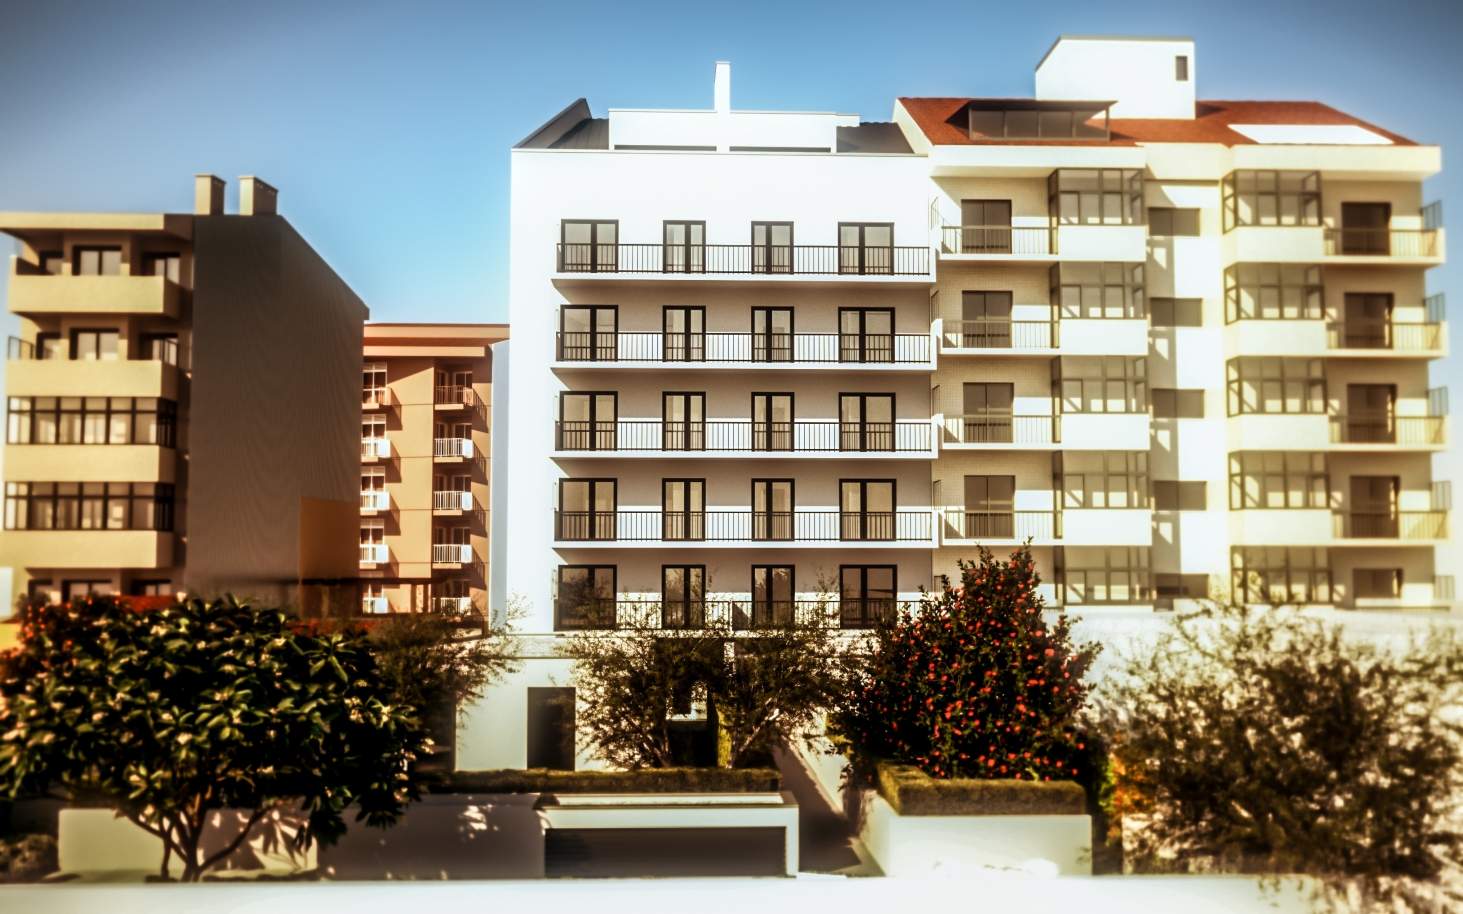 Venda de apartamento com jardim em empreendimento novo, Porto_106279